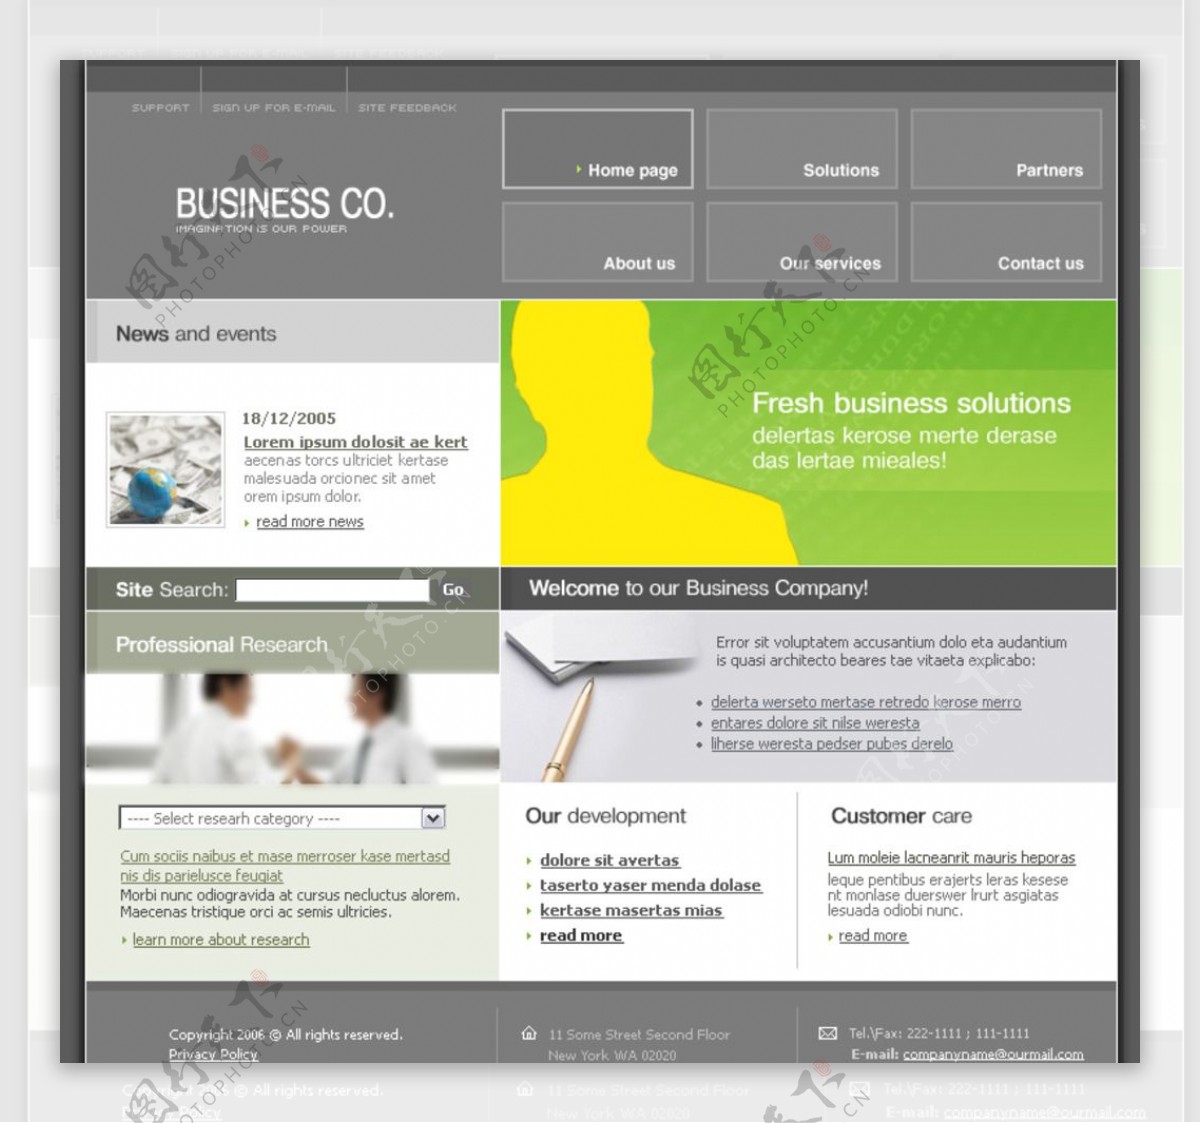 商务企业类型网站图片